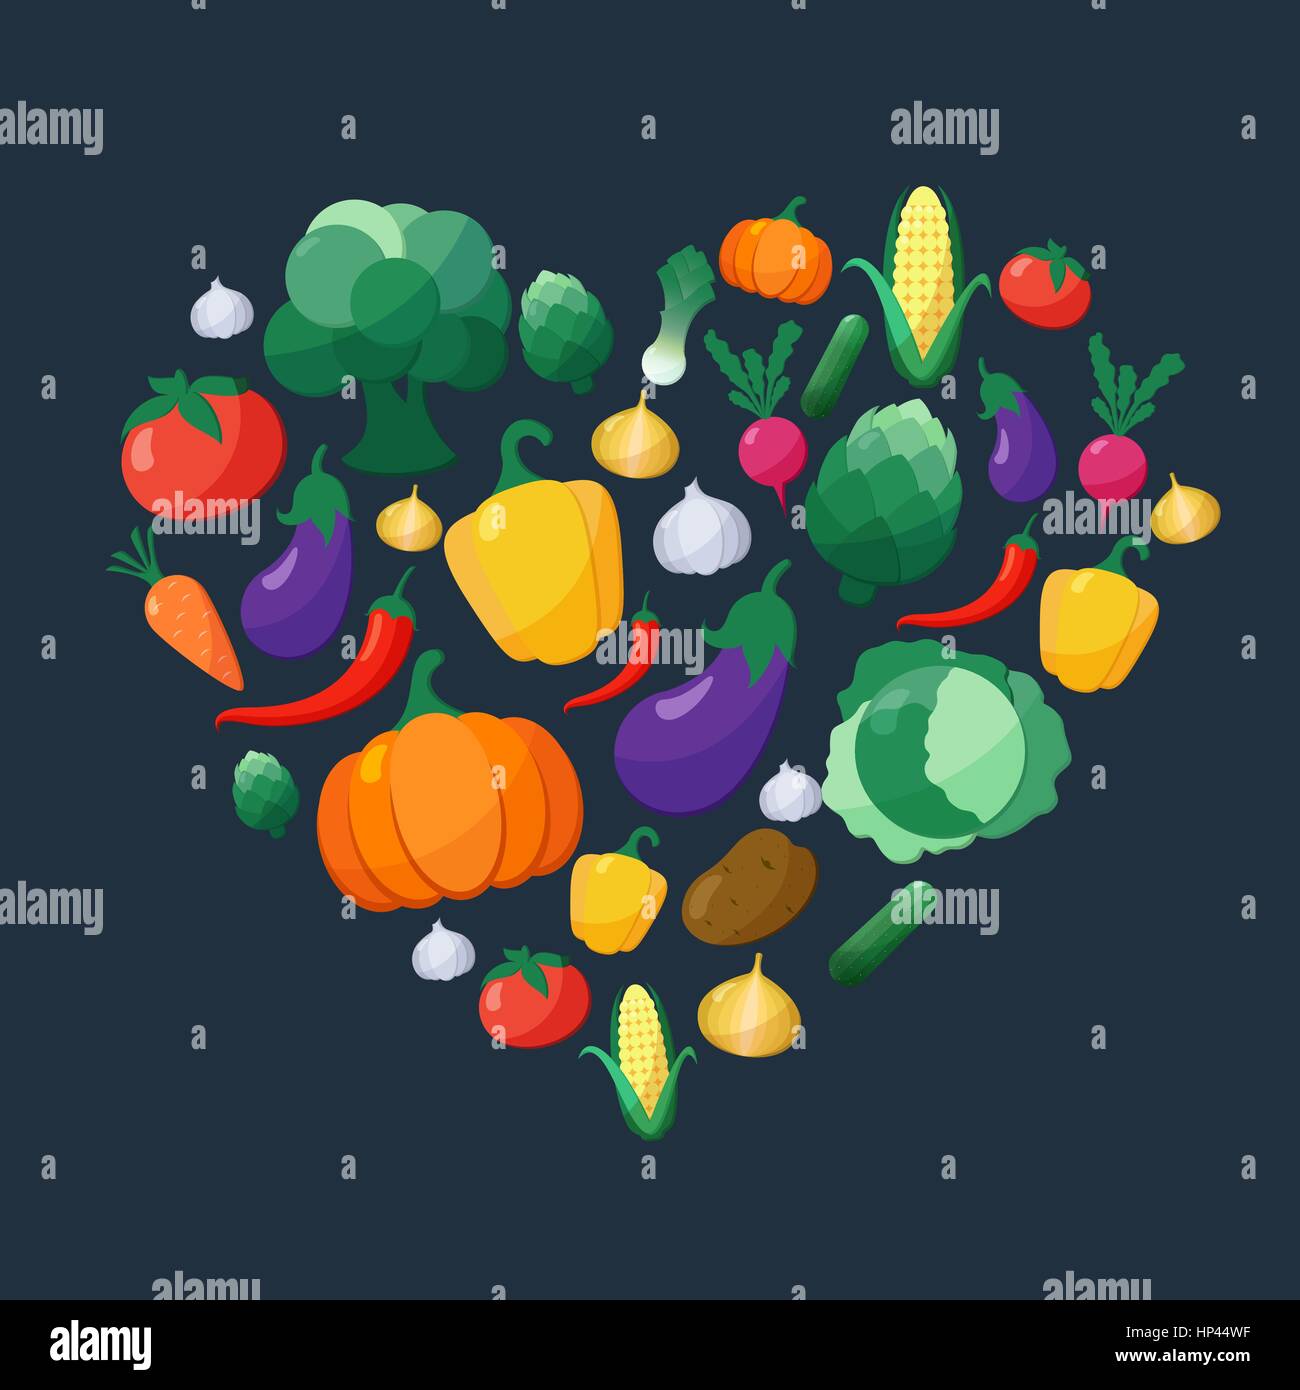 Légumes Vector Icons Set Style plat en forme de coeur sur fond sombre à l'aubergine, la carotte, paprika, artichaut, maïs, radis, potiron, pomme de terre, L Illustration de Vecteur